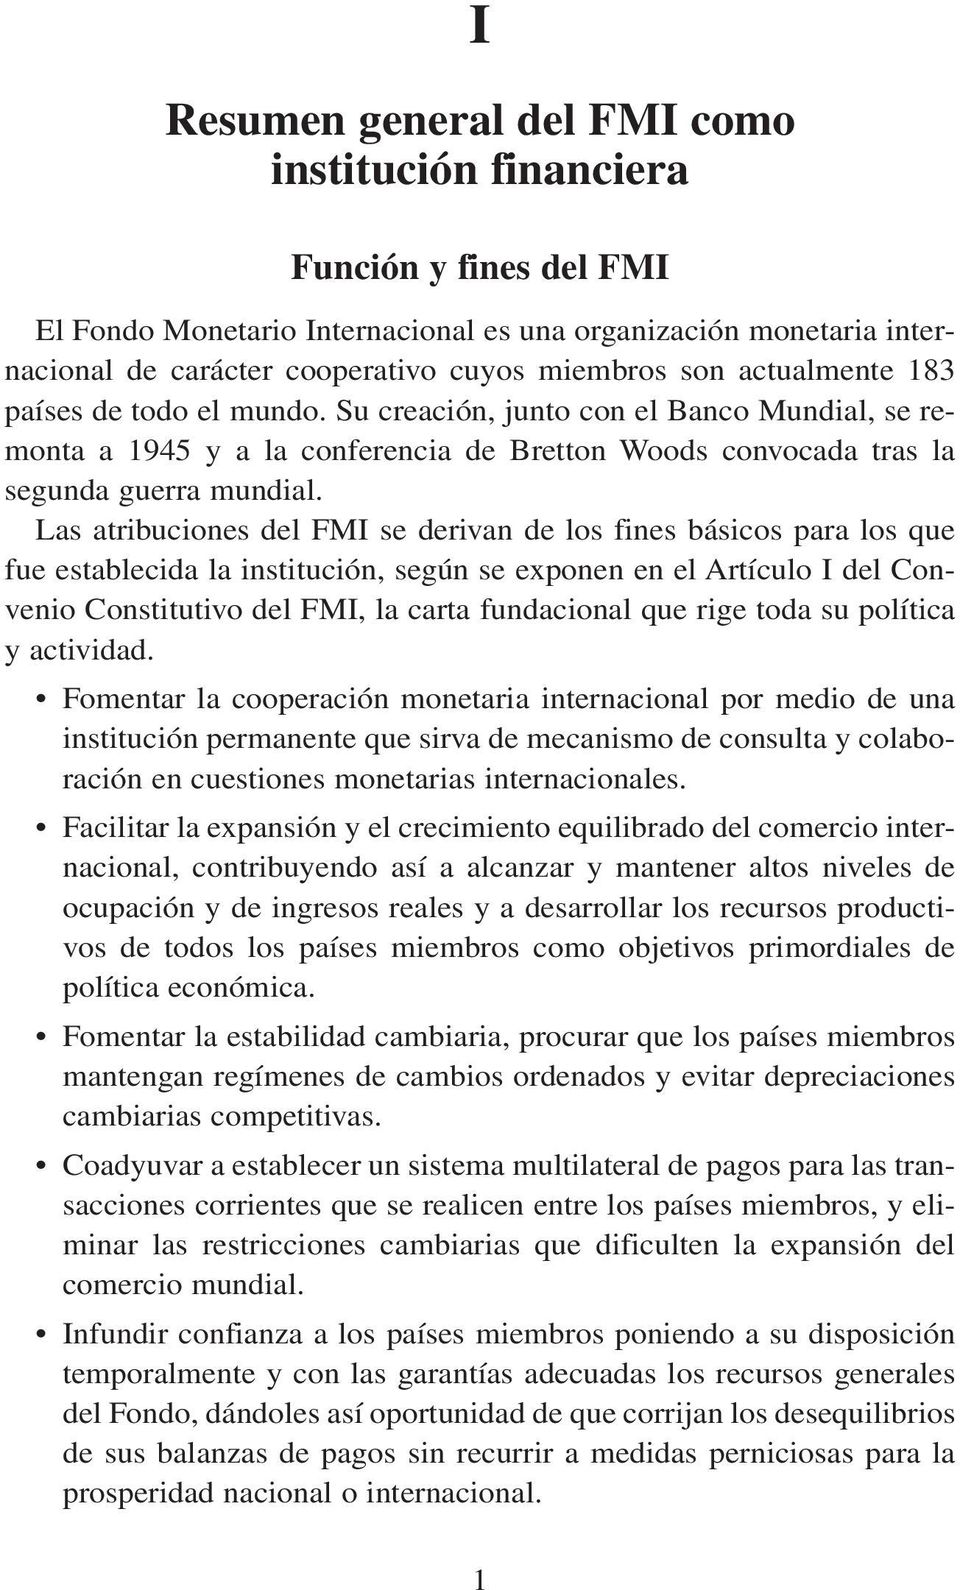 Las atribuciones del FMI se derivan de los fines básicos para los que fue establecida la institución, según se exponen en el Artículo I del Convenio Constitutivo del FMI, la carta fundacional que